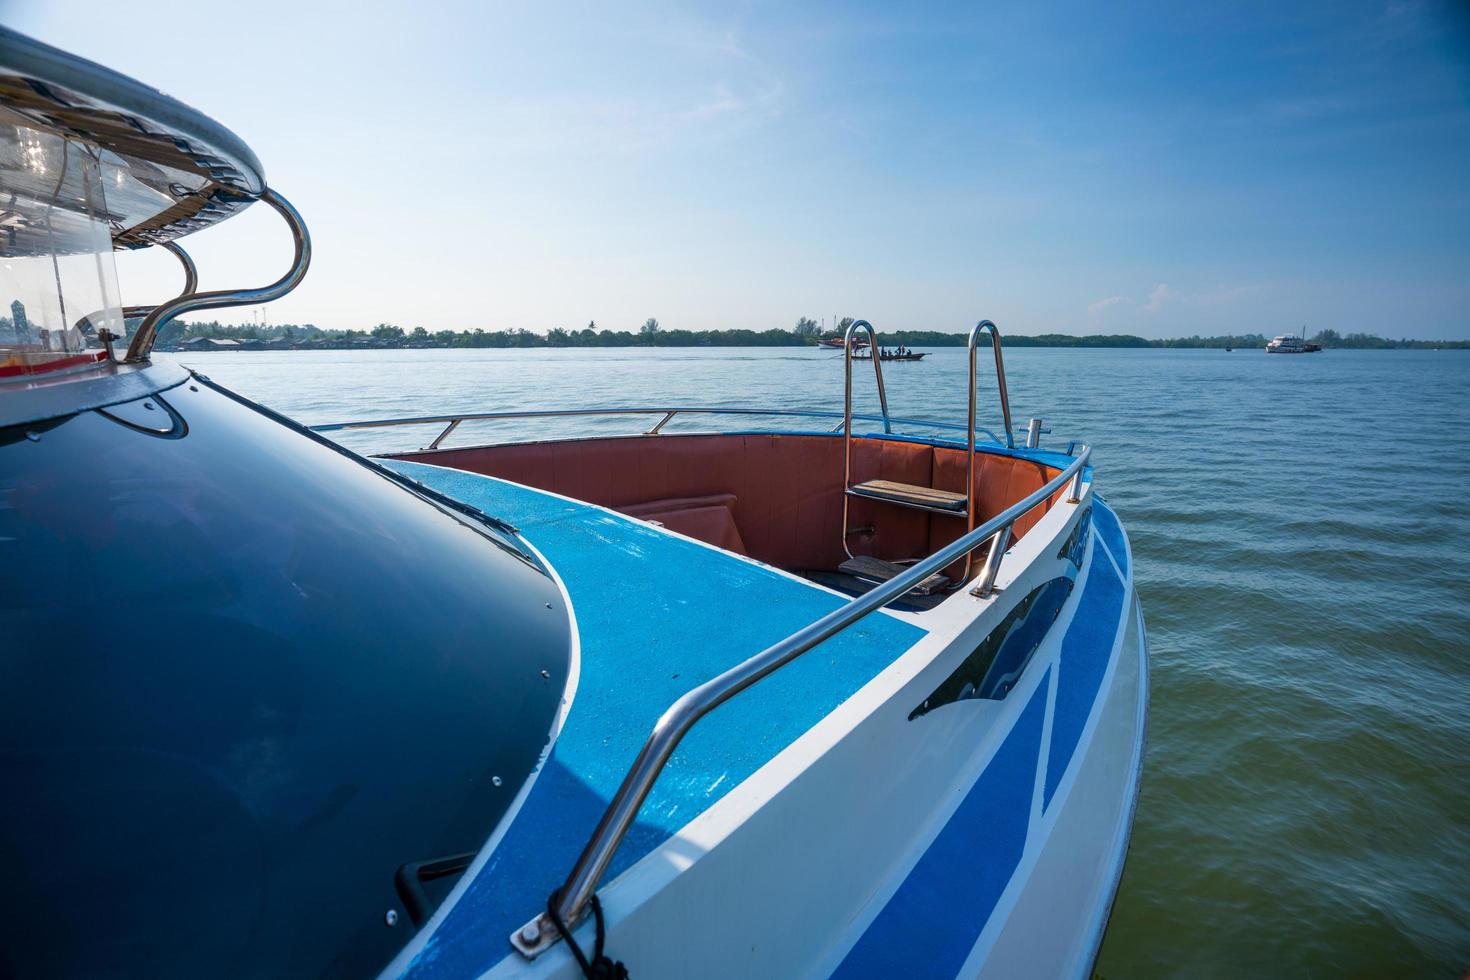 krabi, tailândia - em frente ao iate, passeios de barco no mar, praias limpas de areia branca e mar verde esmeralda. foco suave. foto